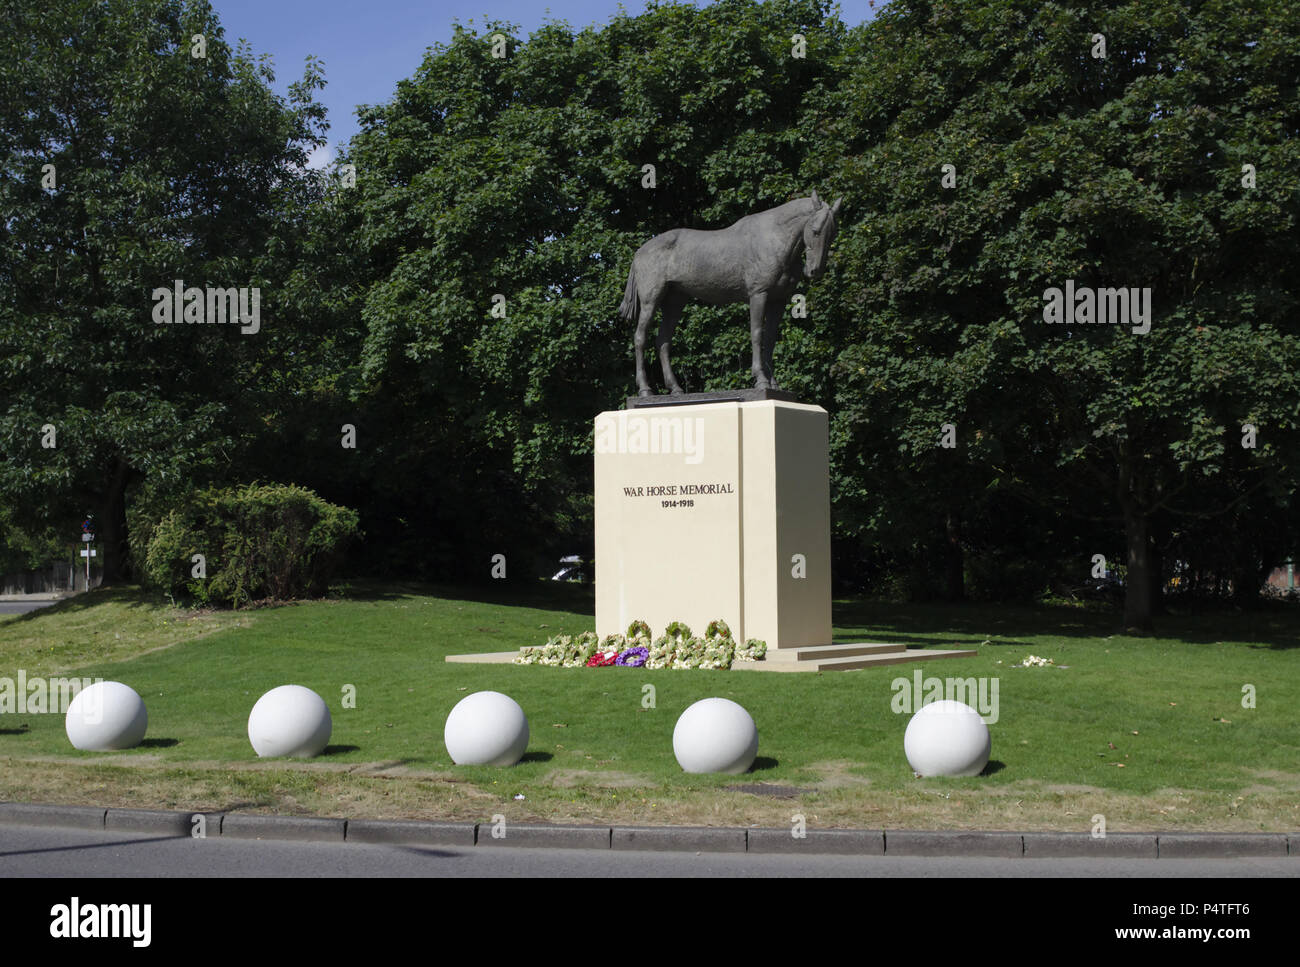 Ascot, Berkshire / UK - 15 juin 2018 : un mémorial à la guerre les chevaux qui ont perdu la vie pendant la Première Guerre mondiale. Conçu par Susan Leyland. Banque D'Images